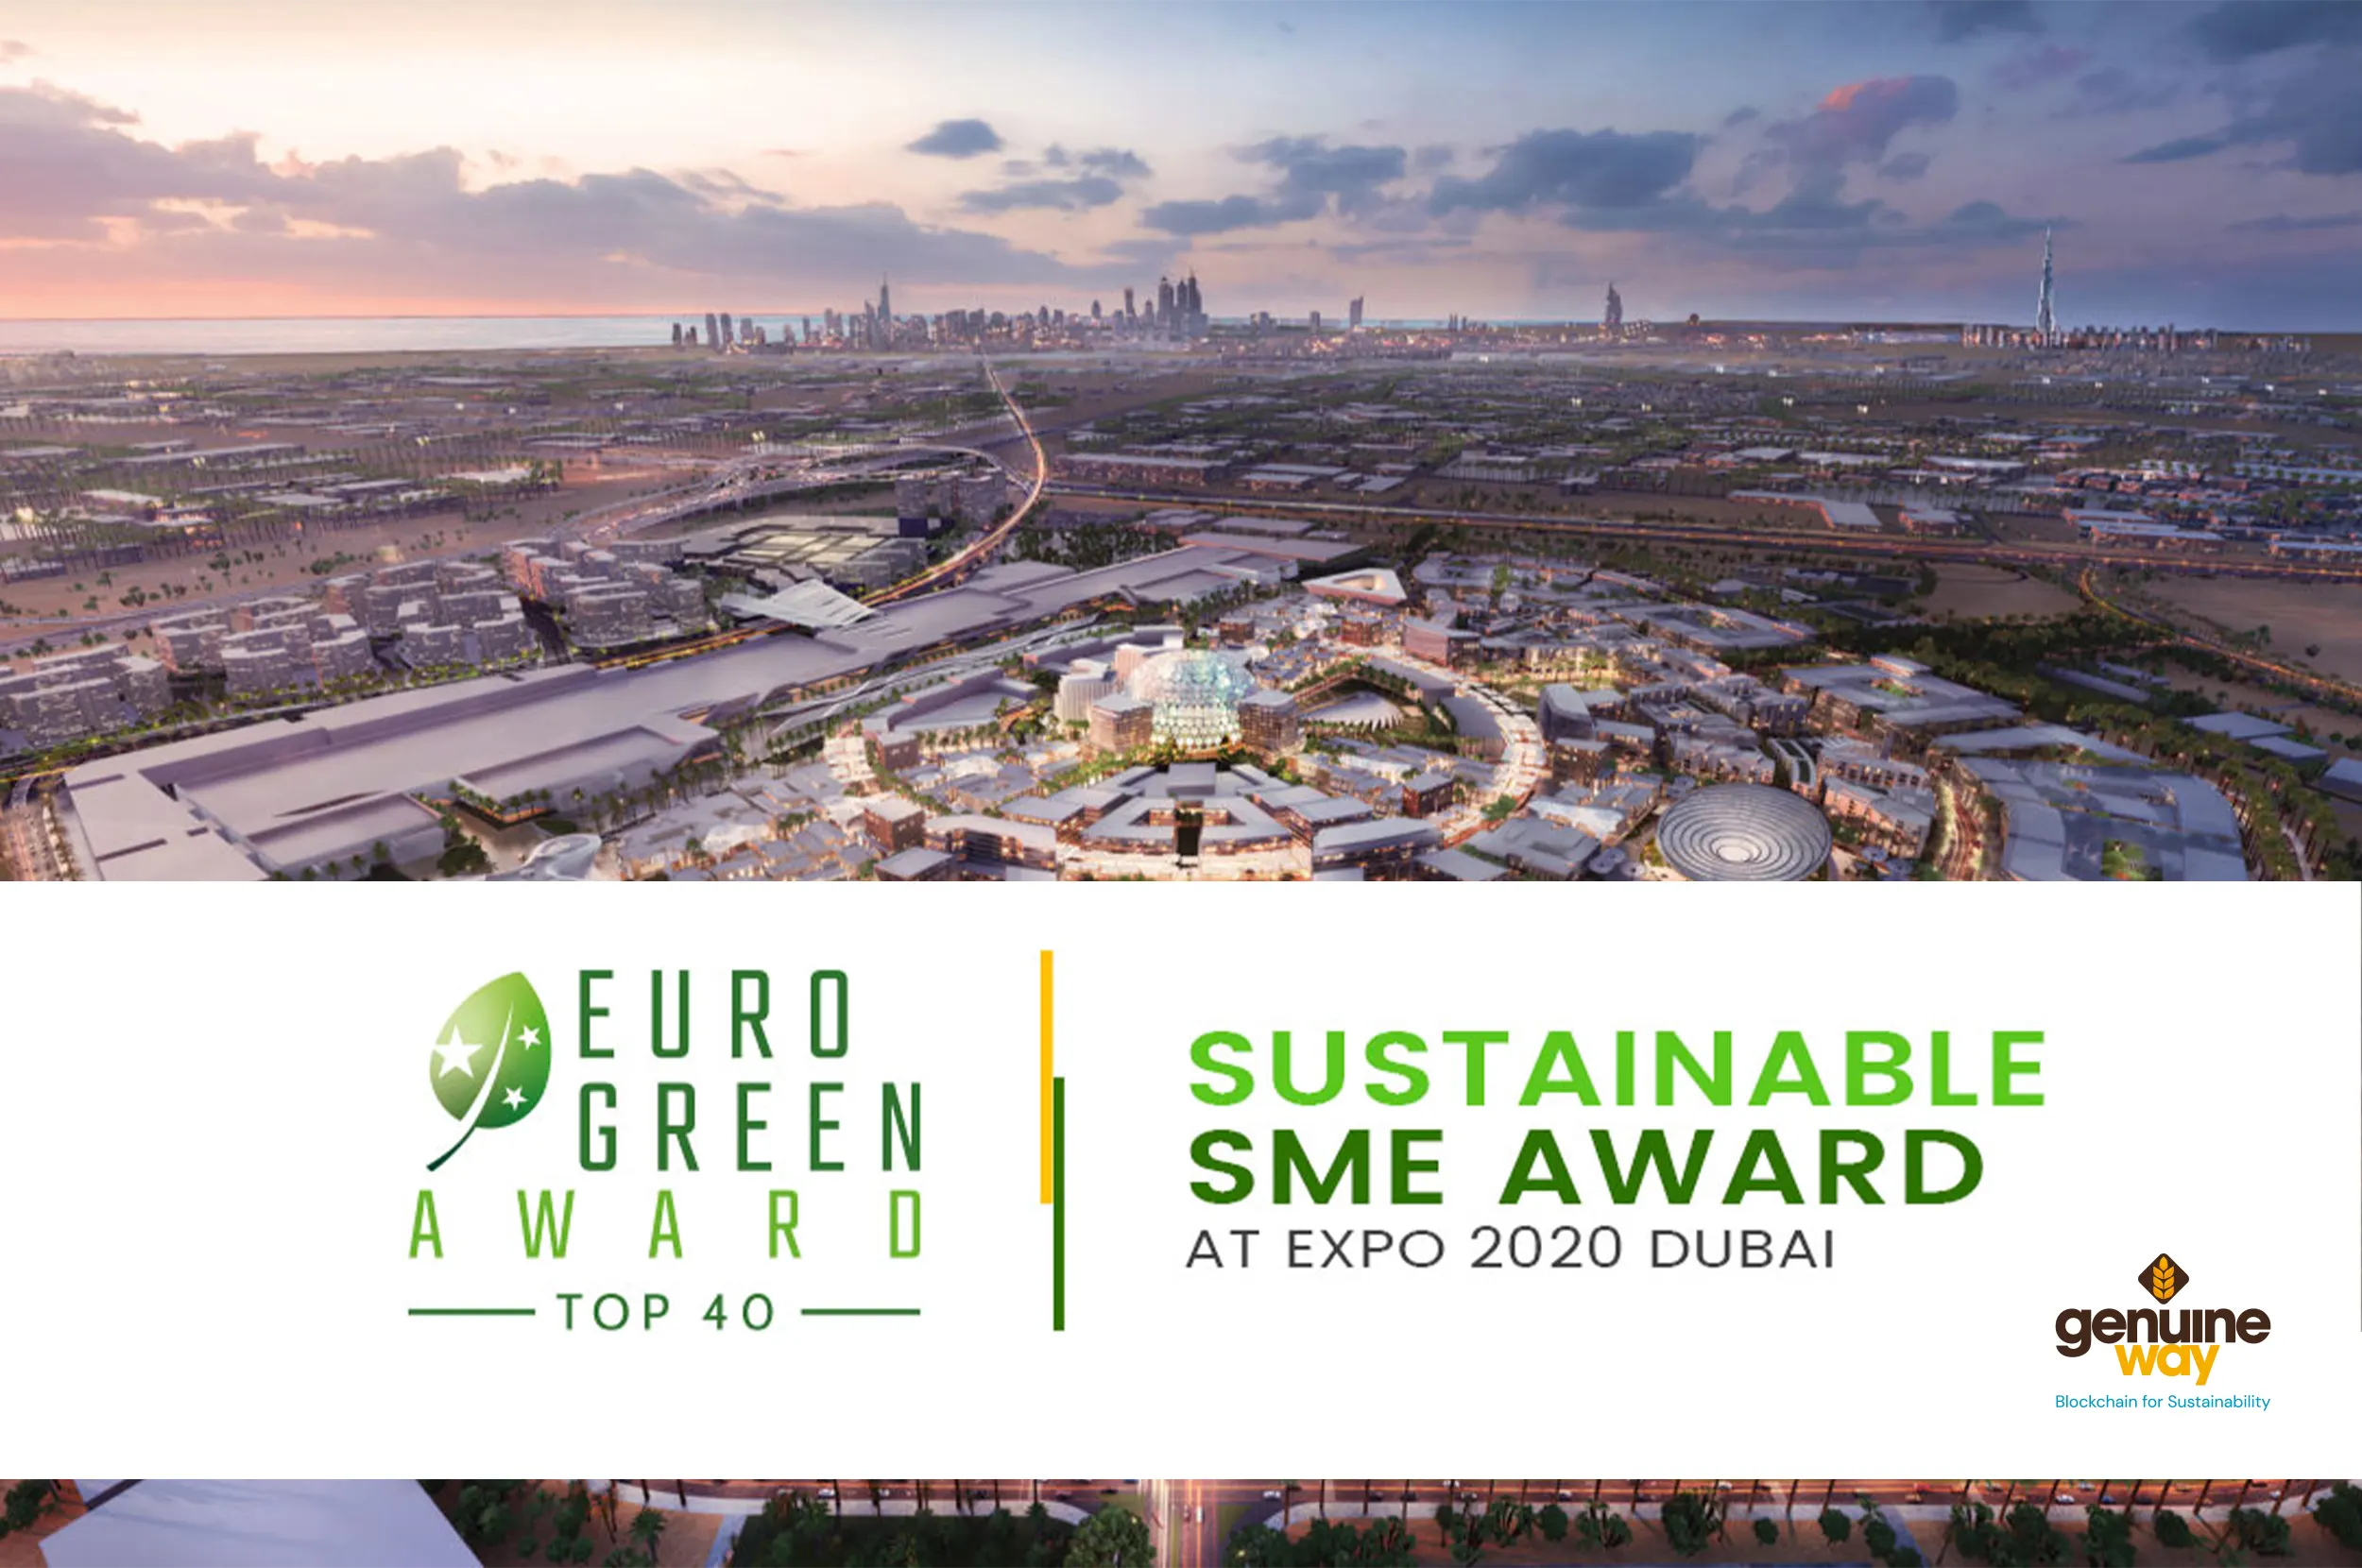 Euro Green Award: Identity for Sustainable award